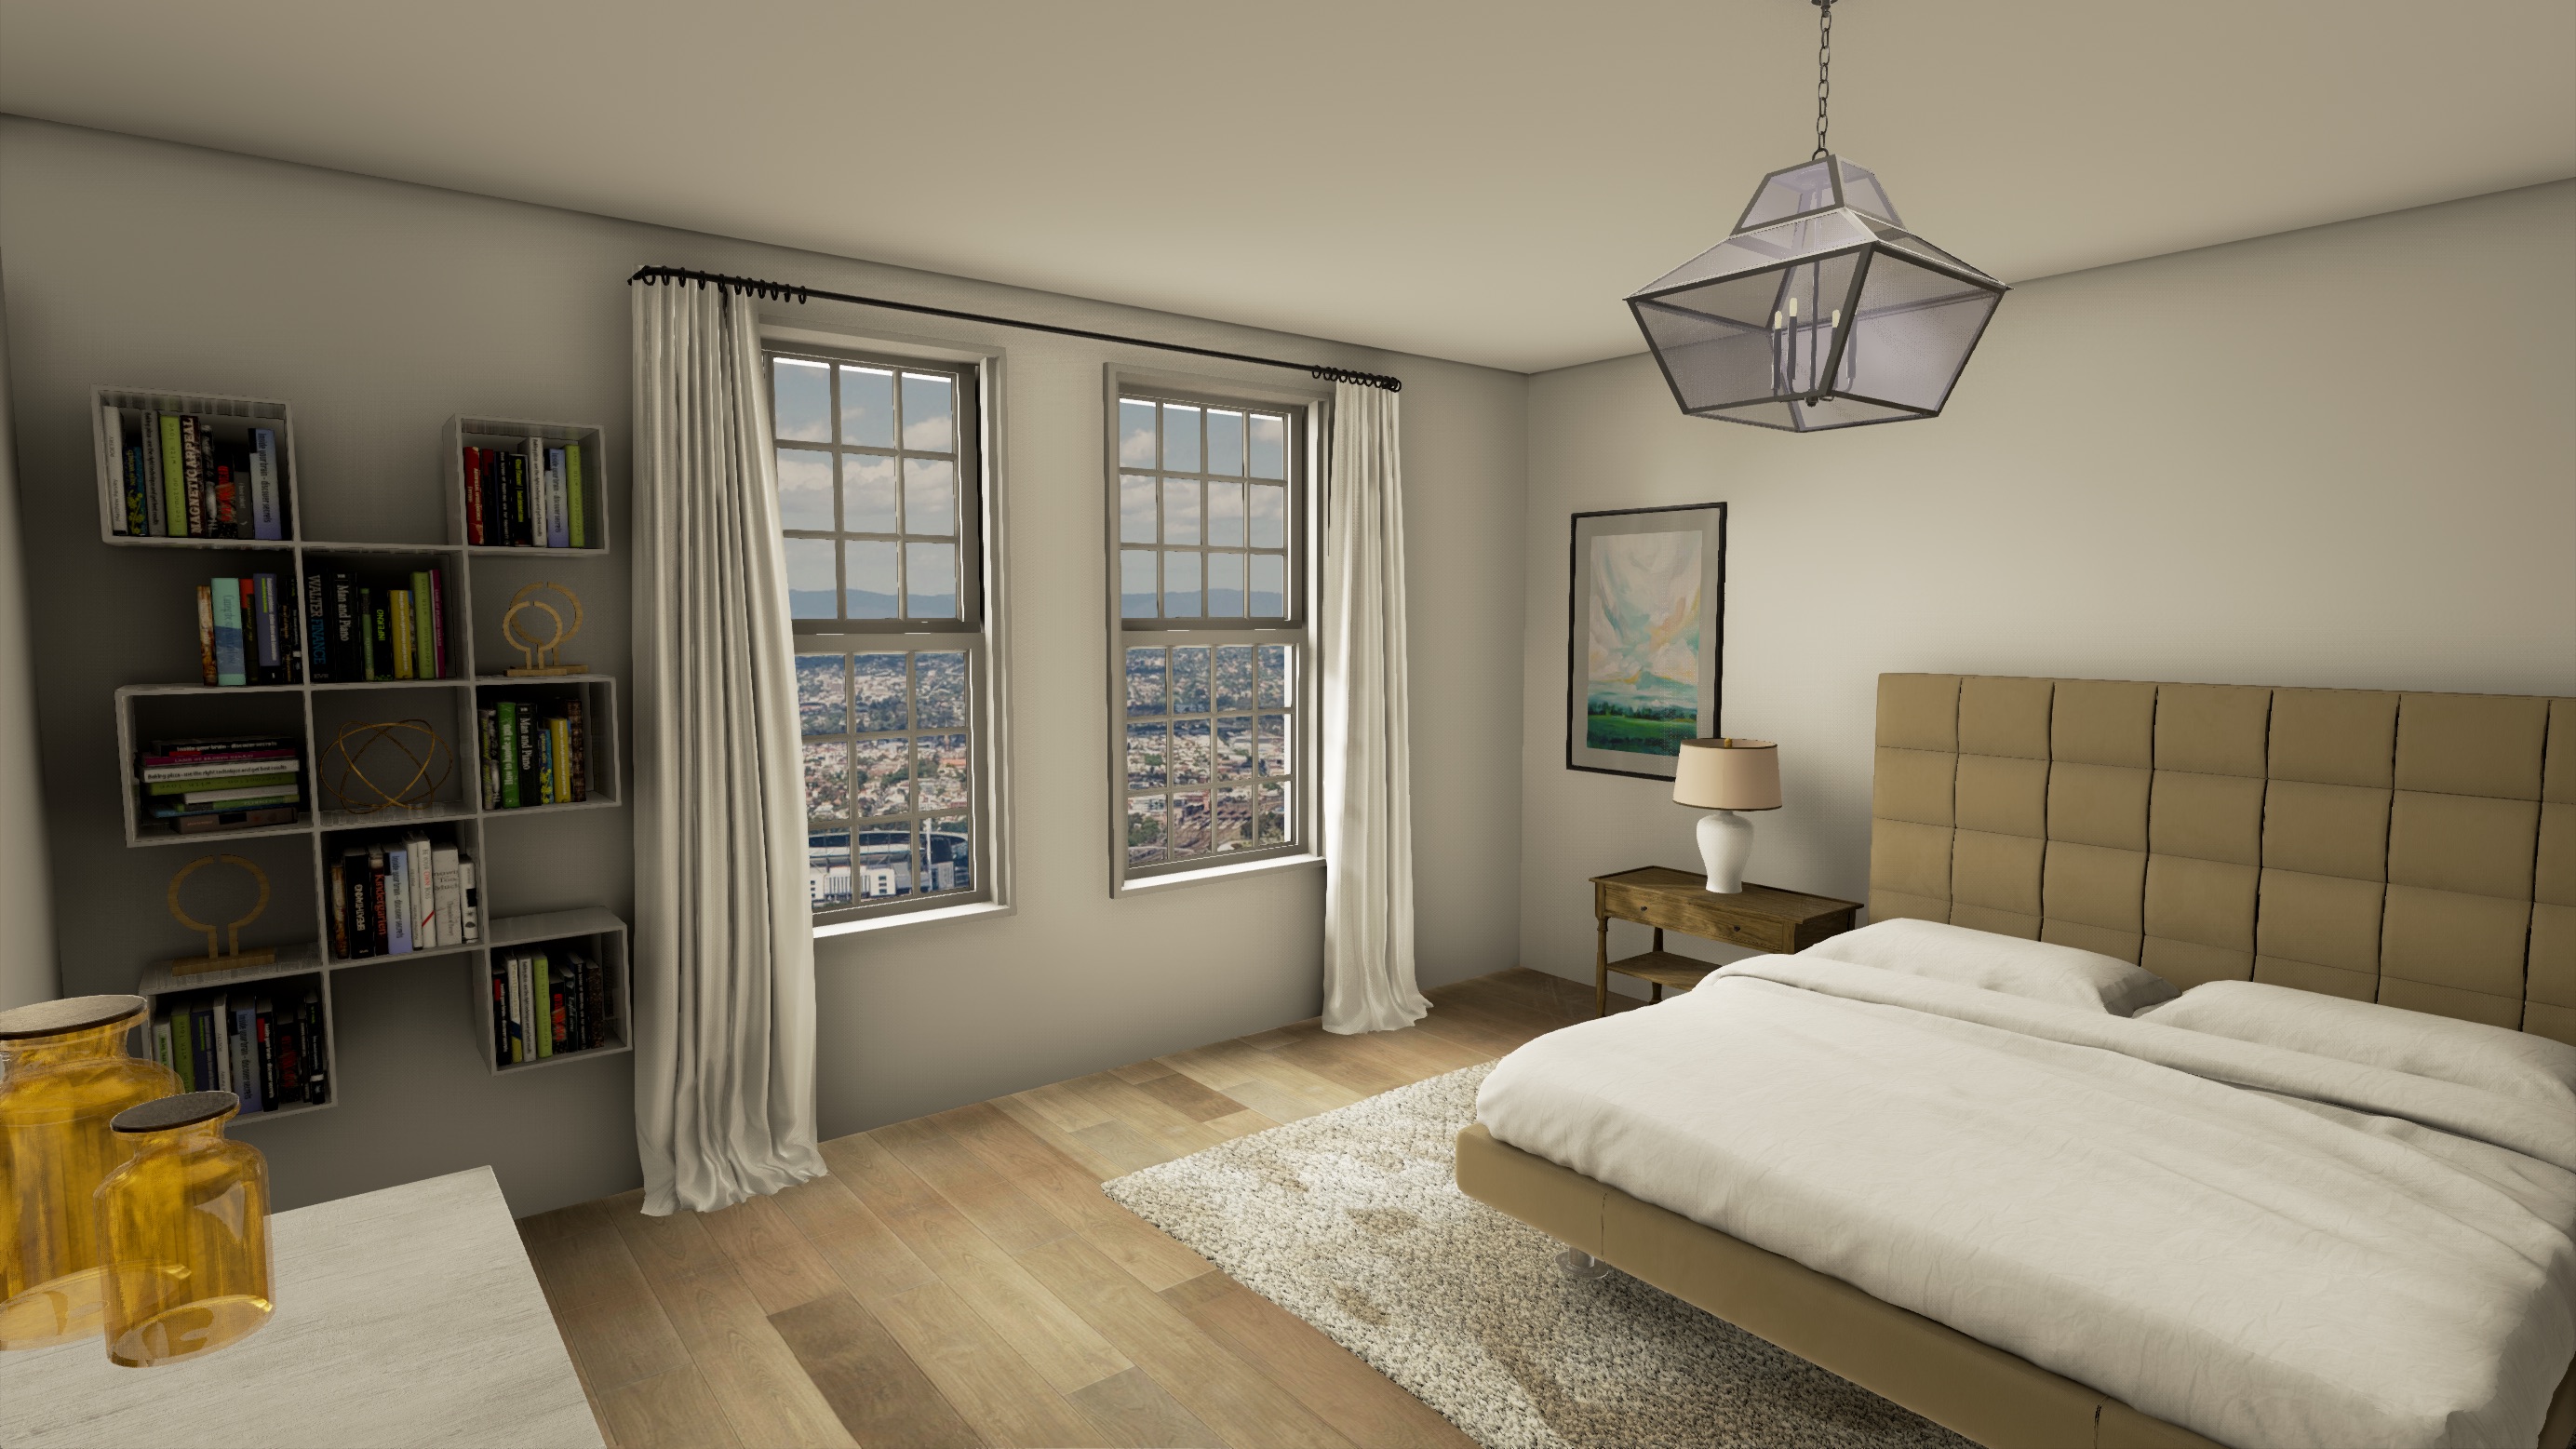 Floorplan Revolution - Bedroom